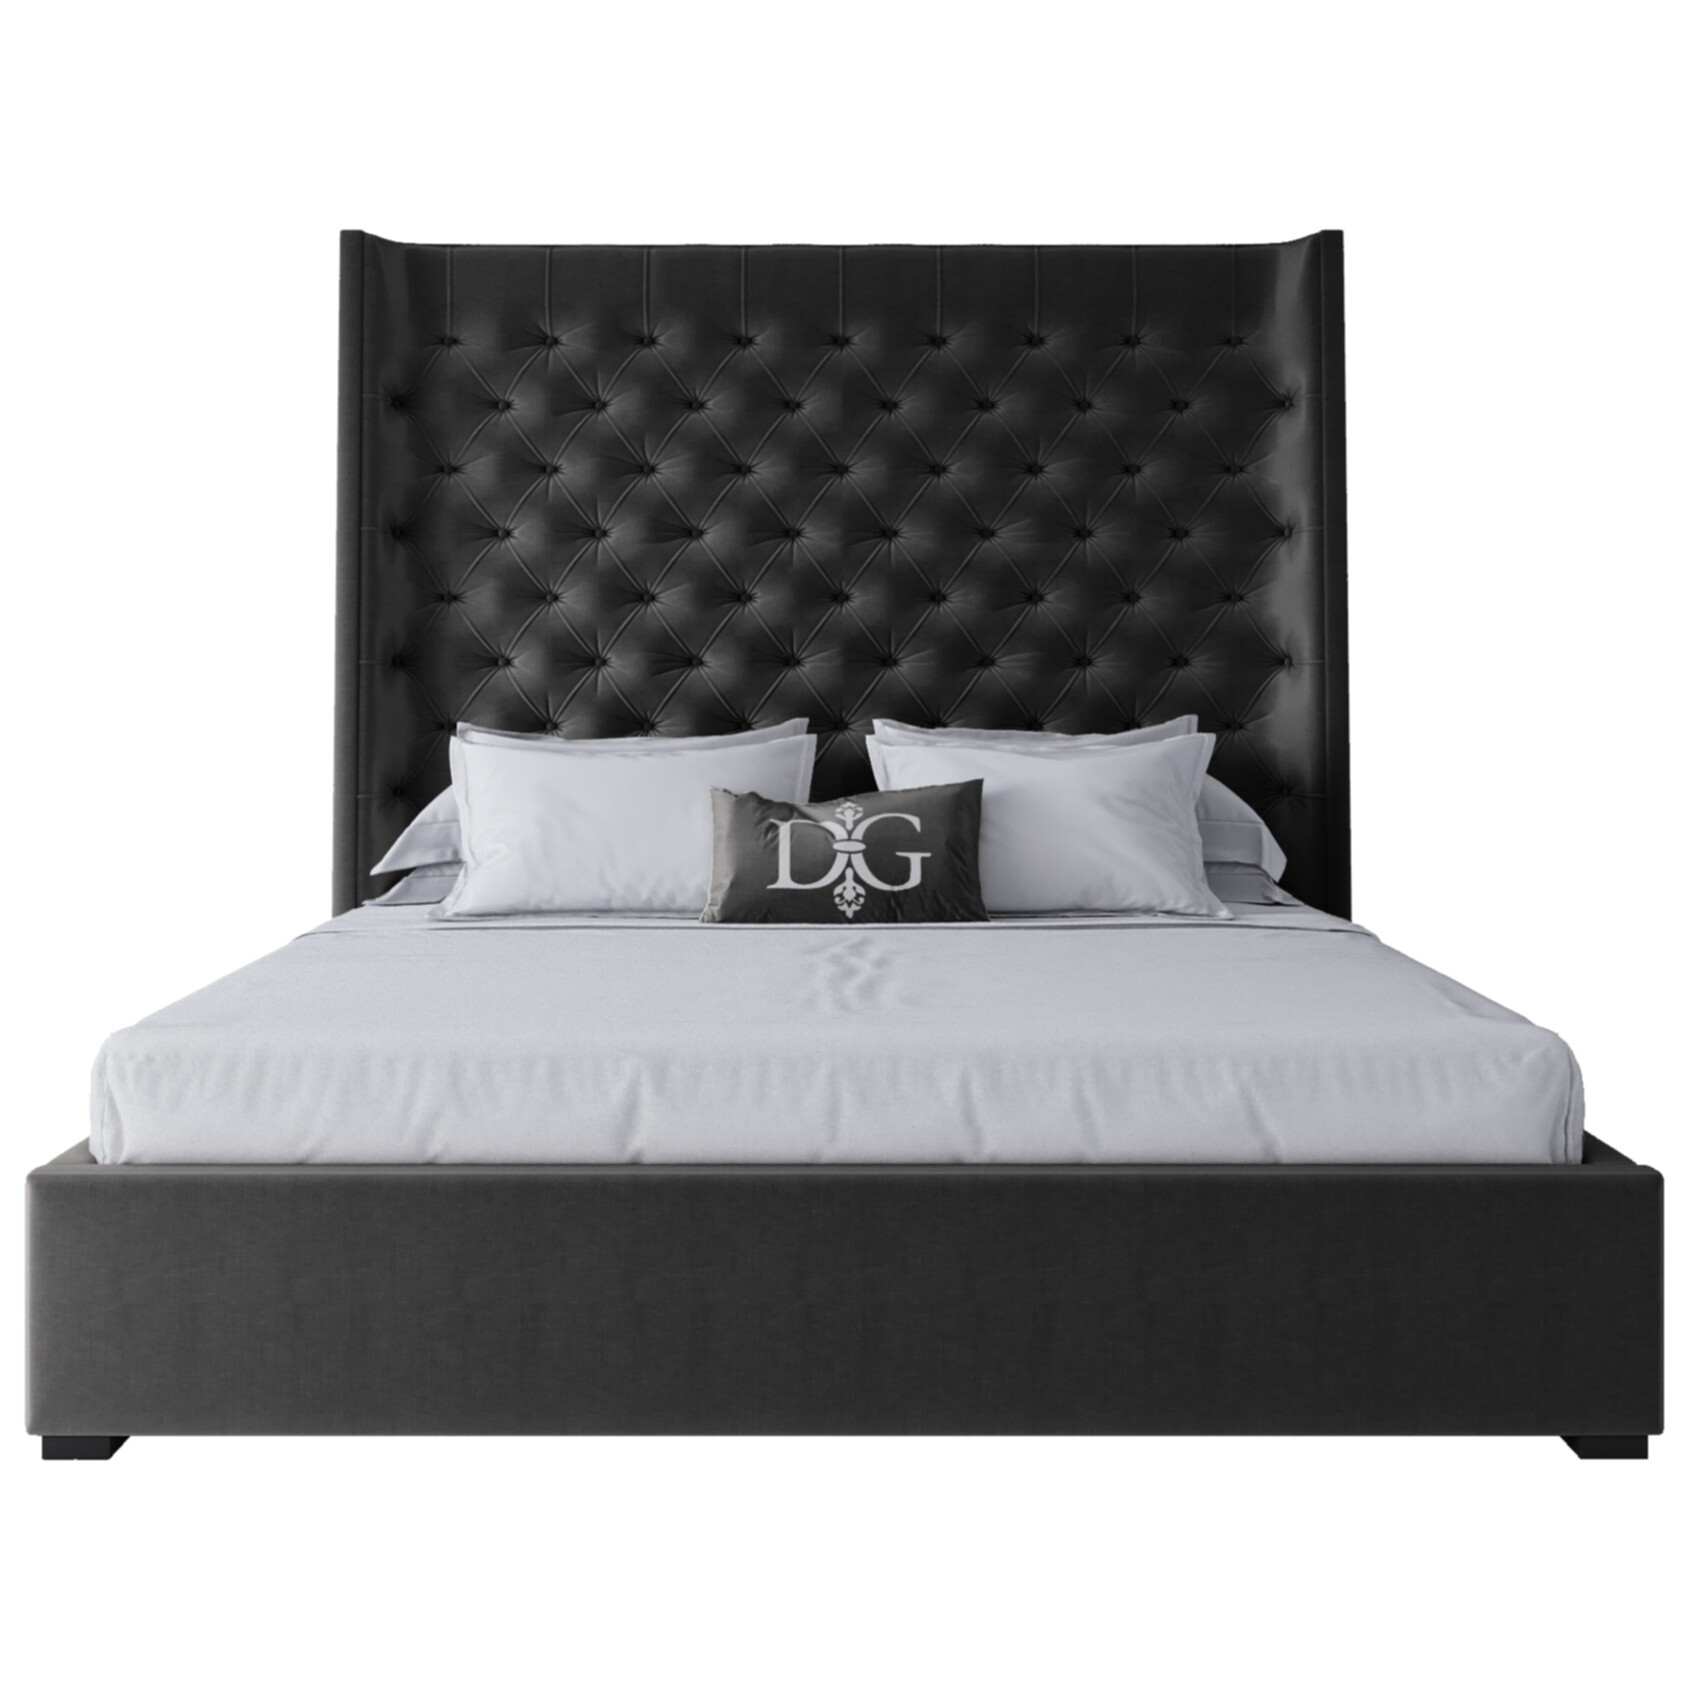 Кровать двуспальная с мягким изголовьем 180х200 см черная Jackie King